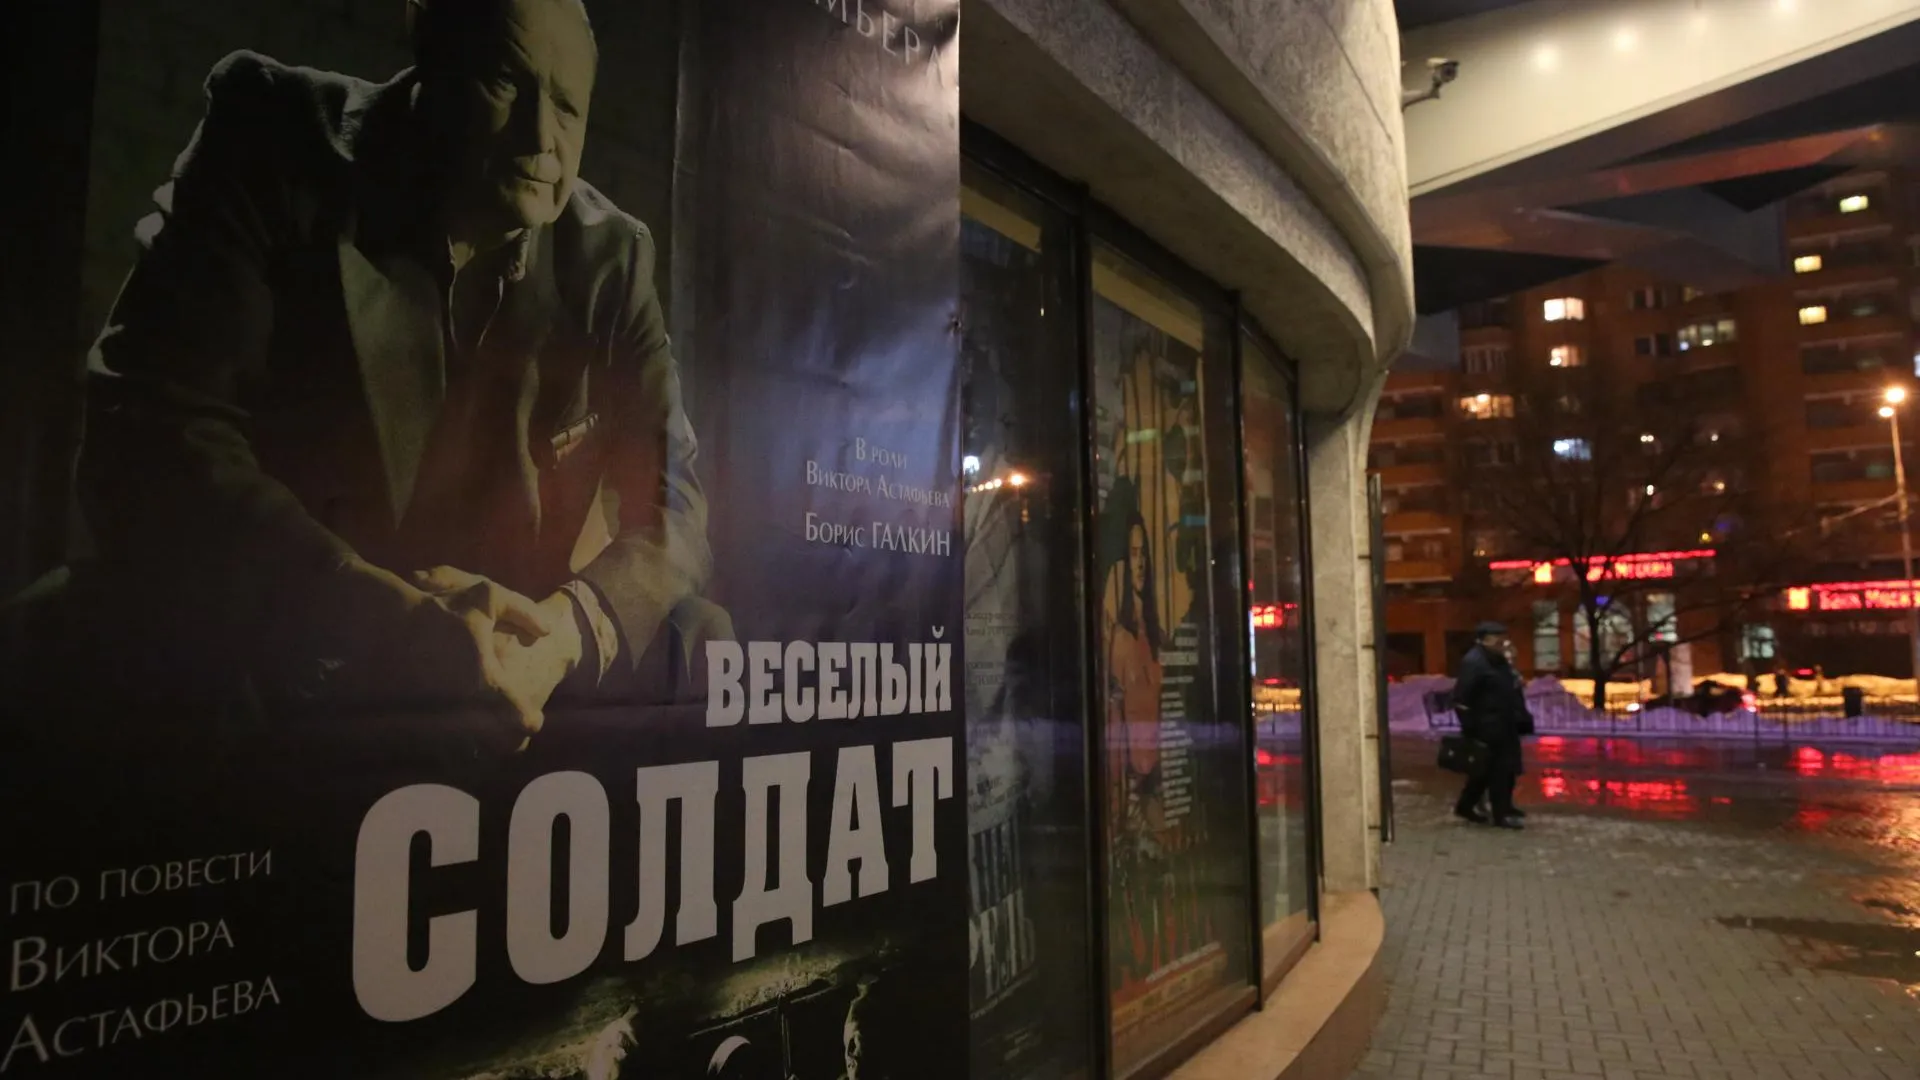 Премьера спектакля «Веселый солдат» состоялась в Московском Губернском театре